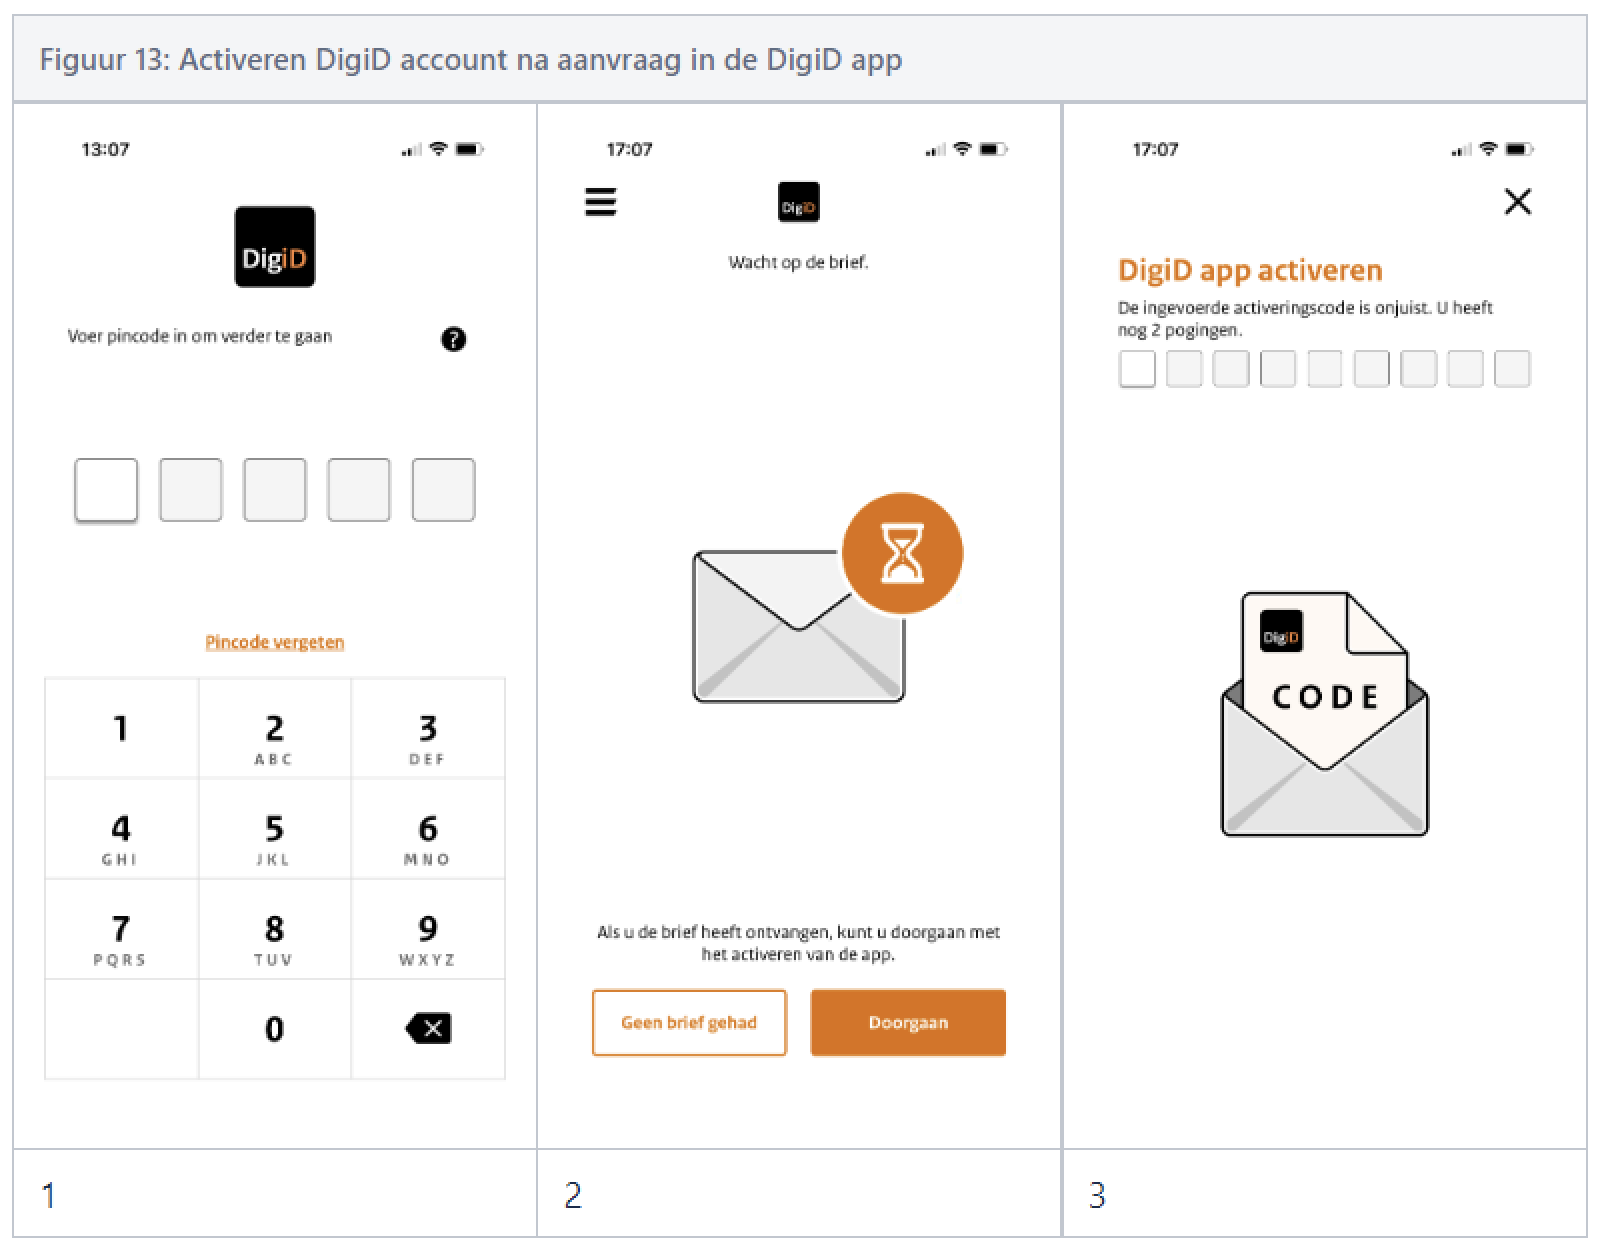 Figuur 13 - Activeren DigiD account na aanvraag in de DigiD app